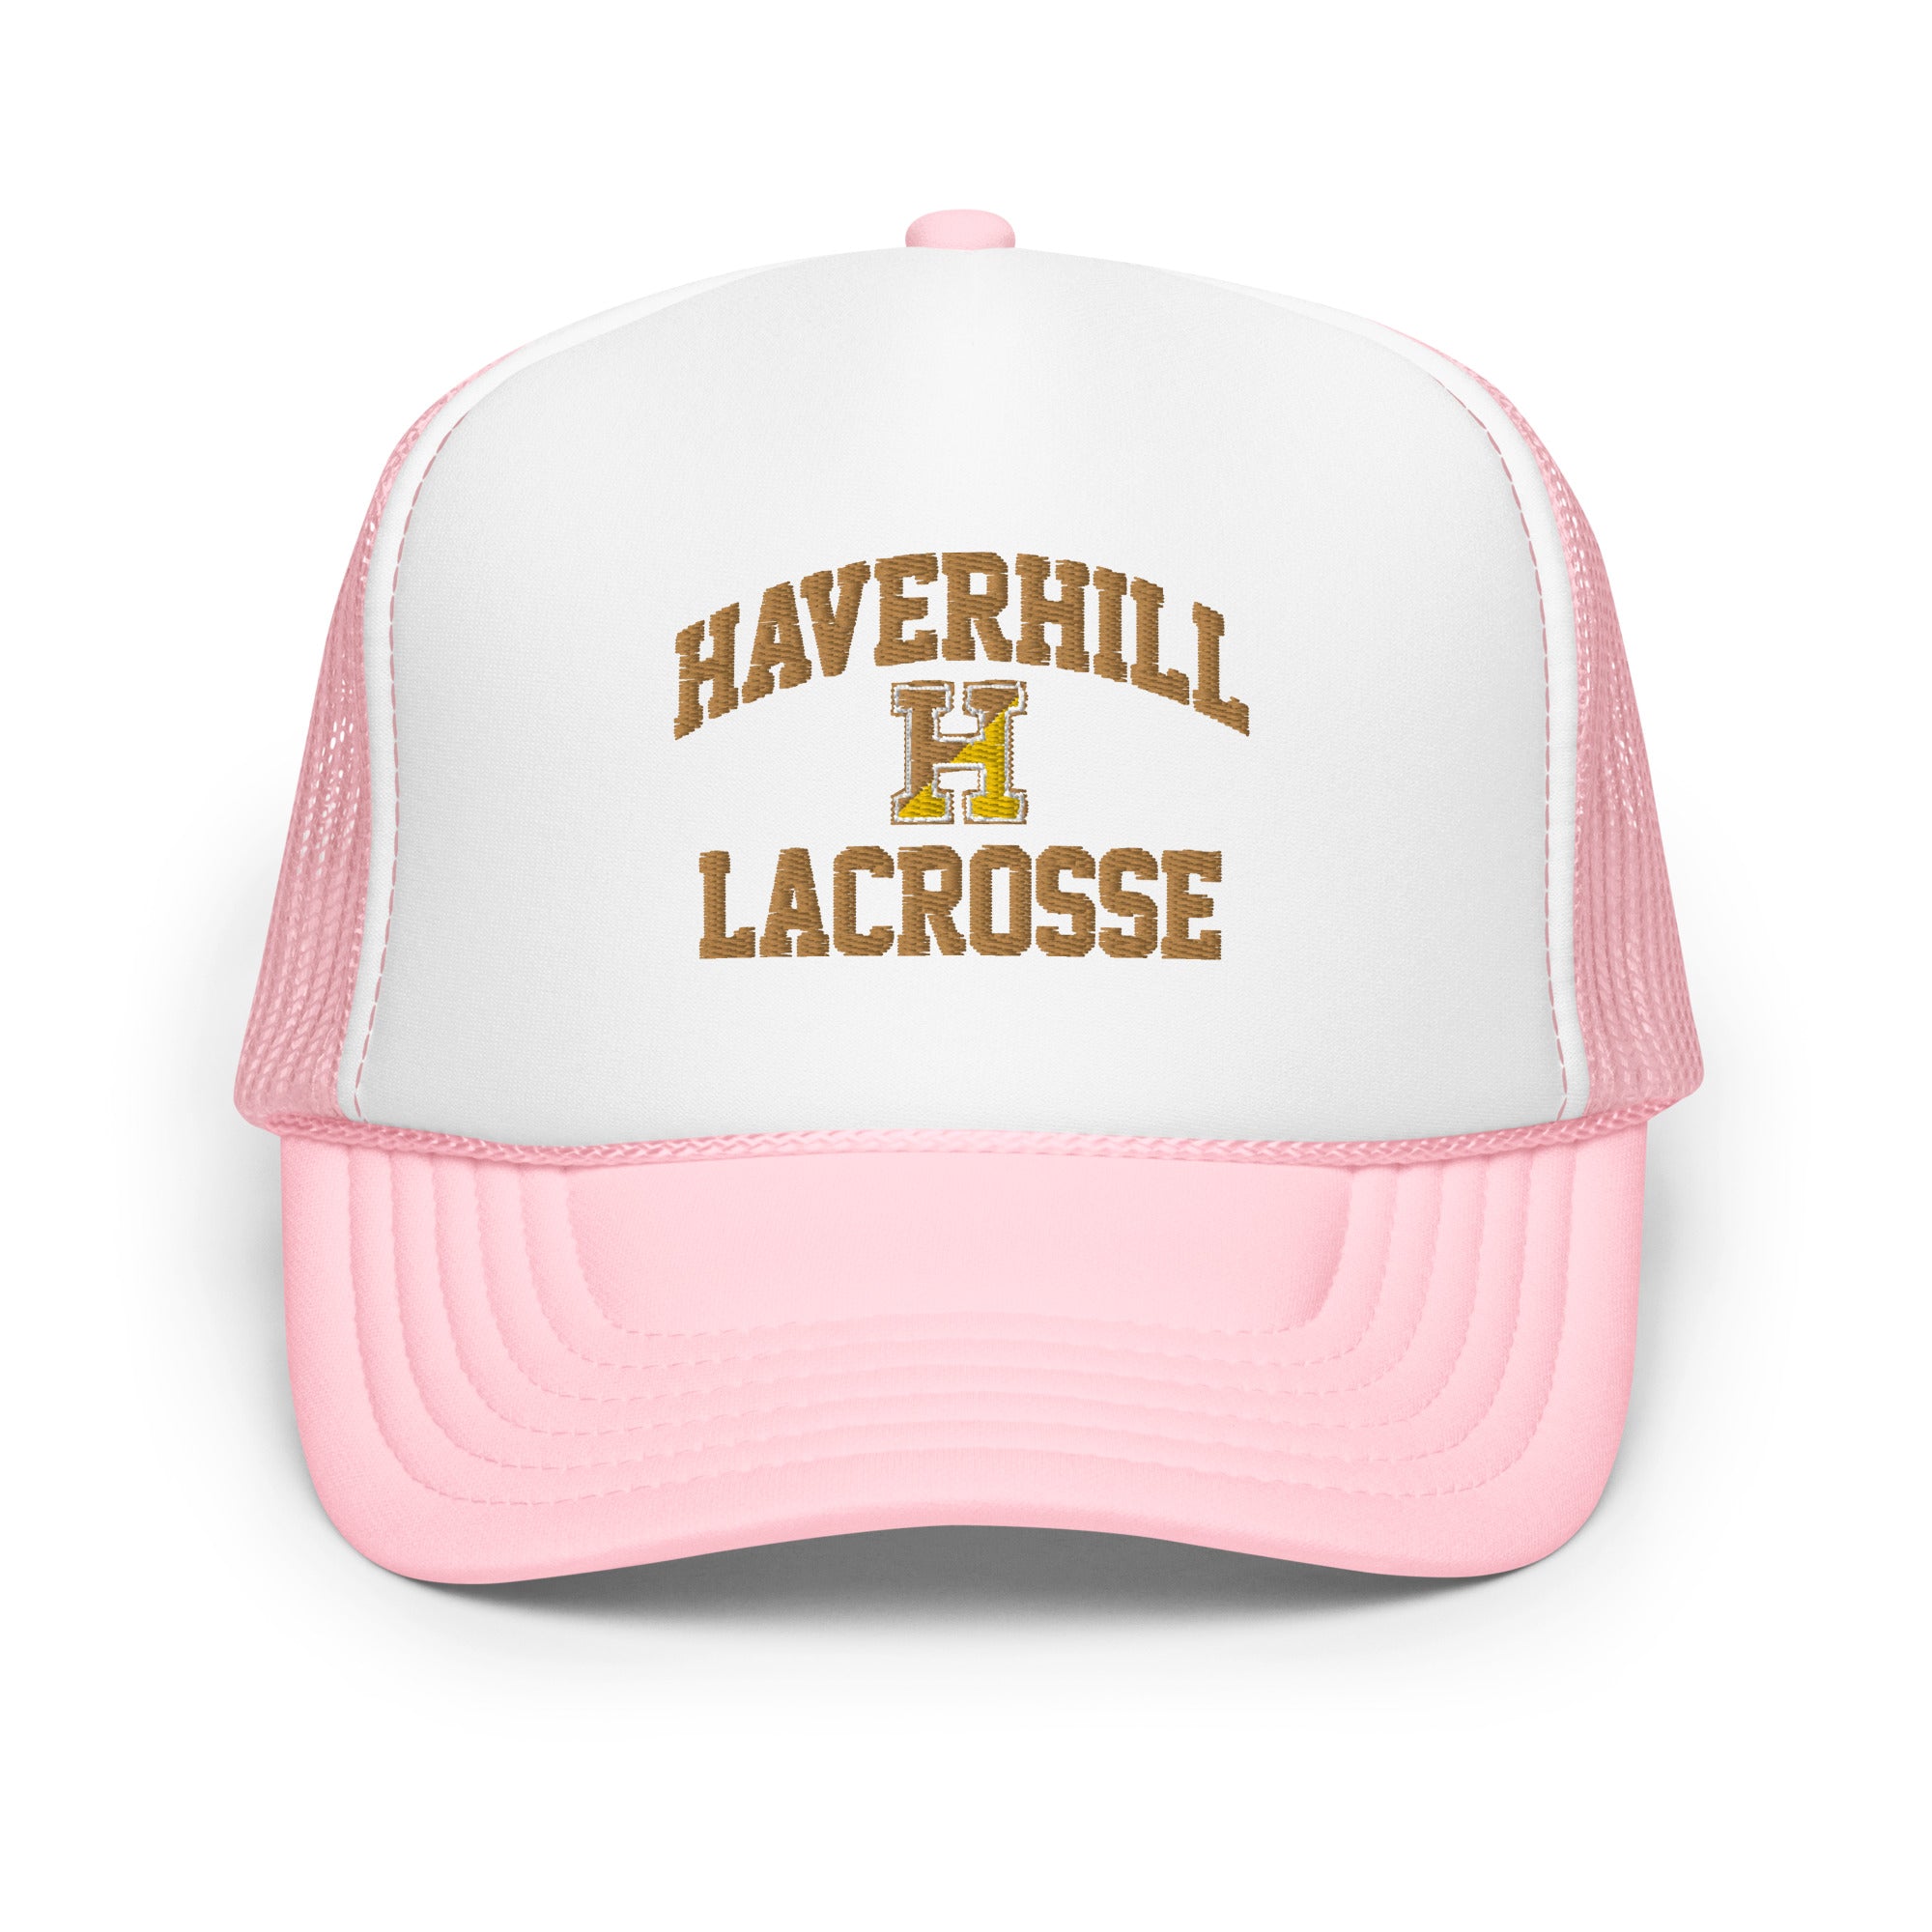 Haverhill Foam trucker hat